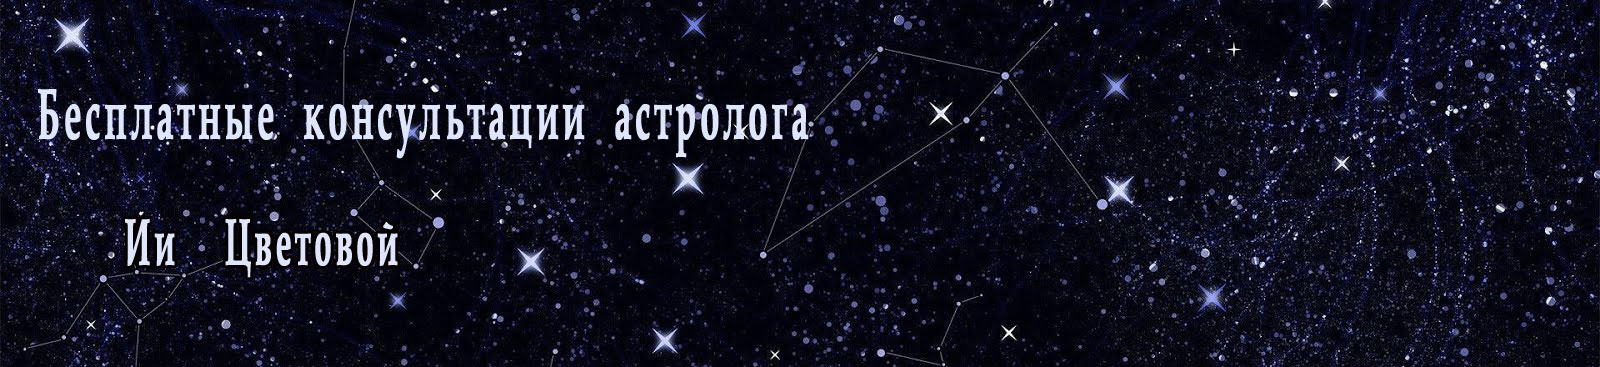 Звездавед: бесплатные консультации астролога онлайн